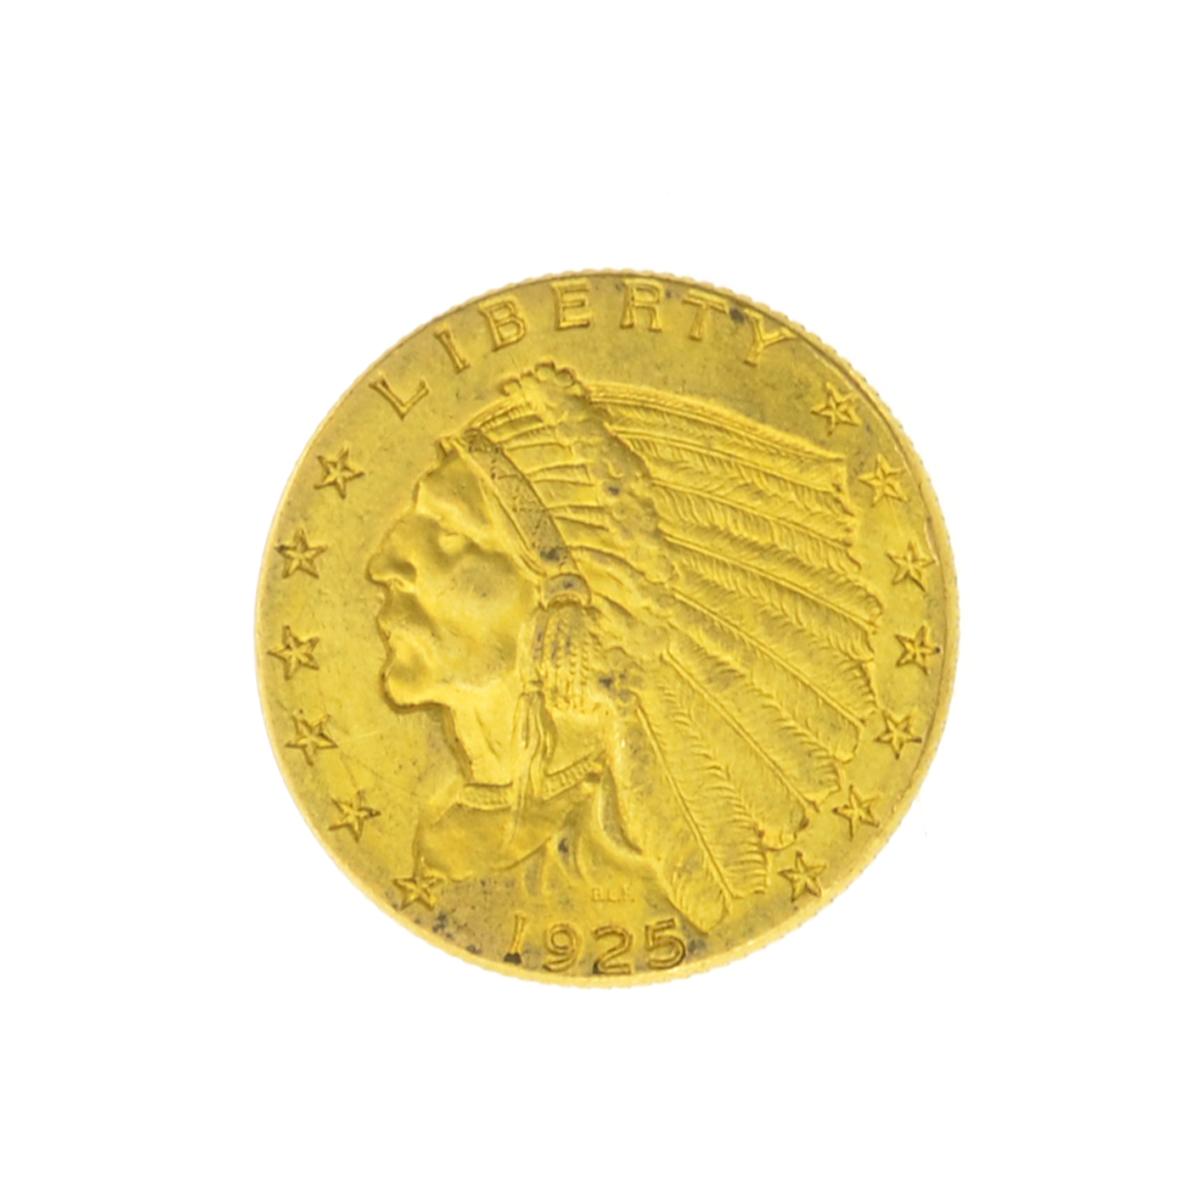 *1925-D $2.50 U.S. Indian Head Gold Coin (JG)